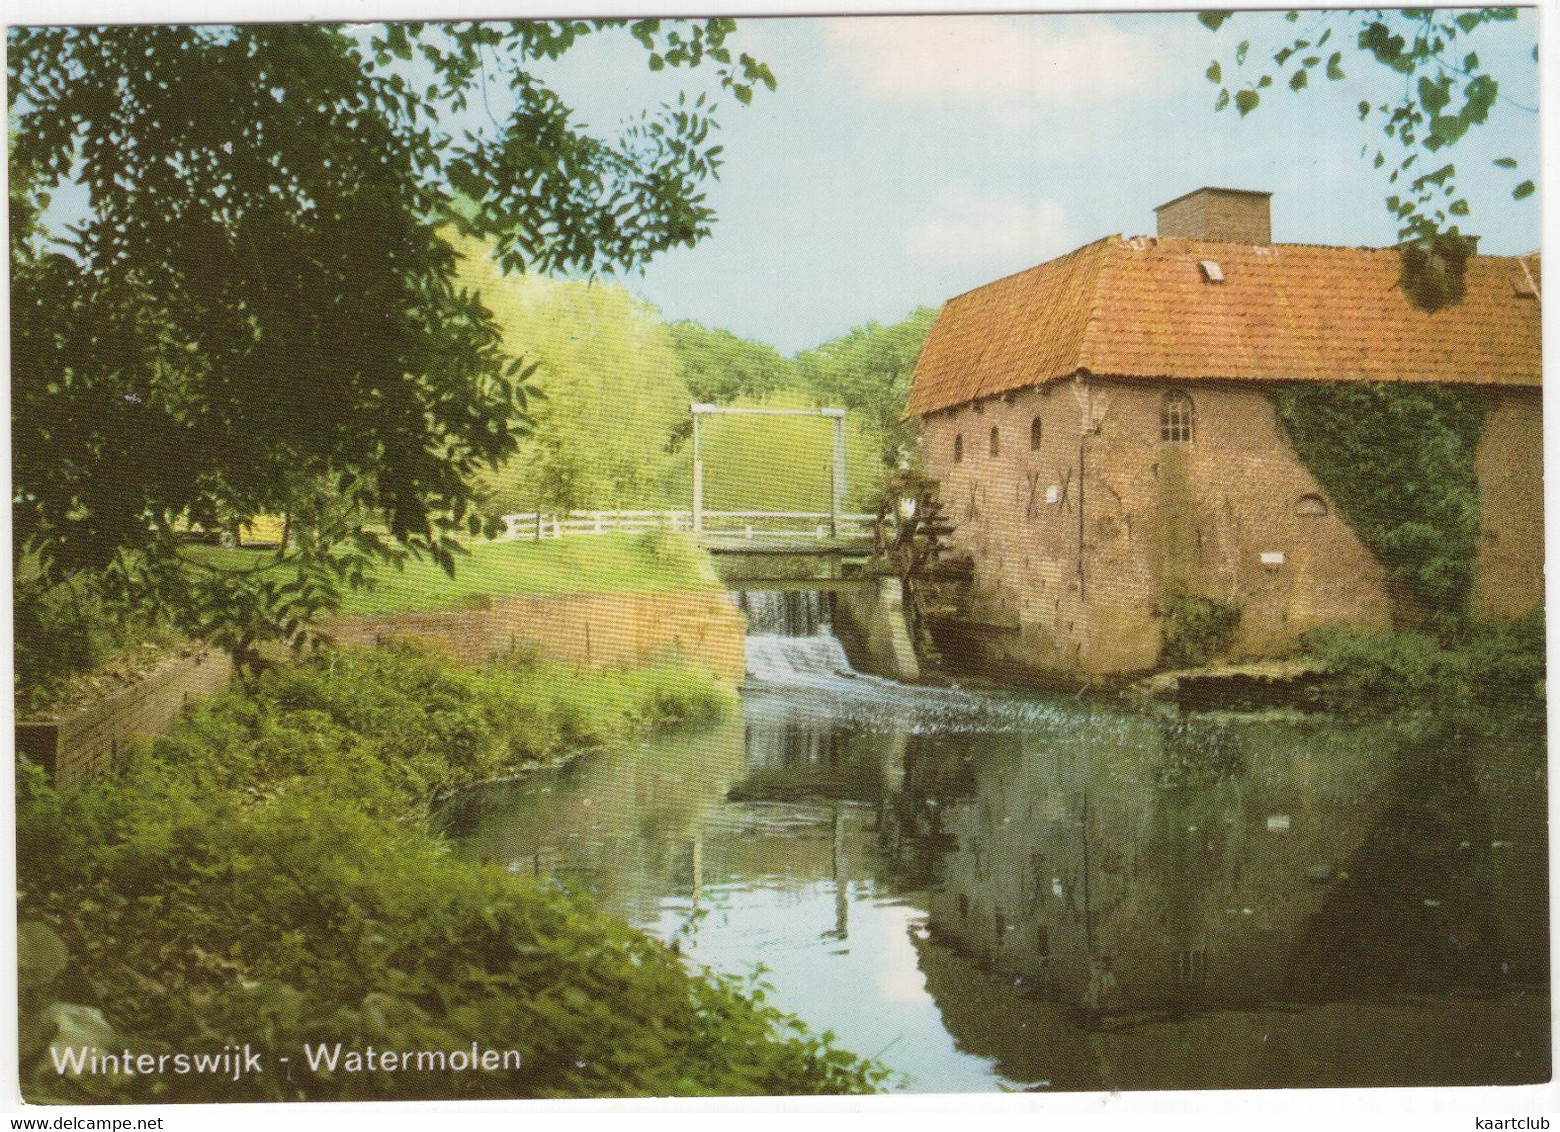 Winterswijk - Watermolen 'Berenschot', Natuurgebied 't Bekkendelle - (Gelderland / Nederland)  - L 7816 - Winterswijk